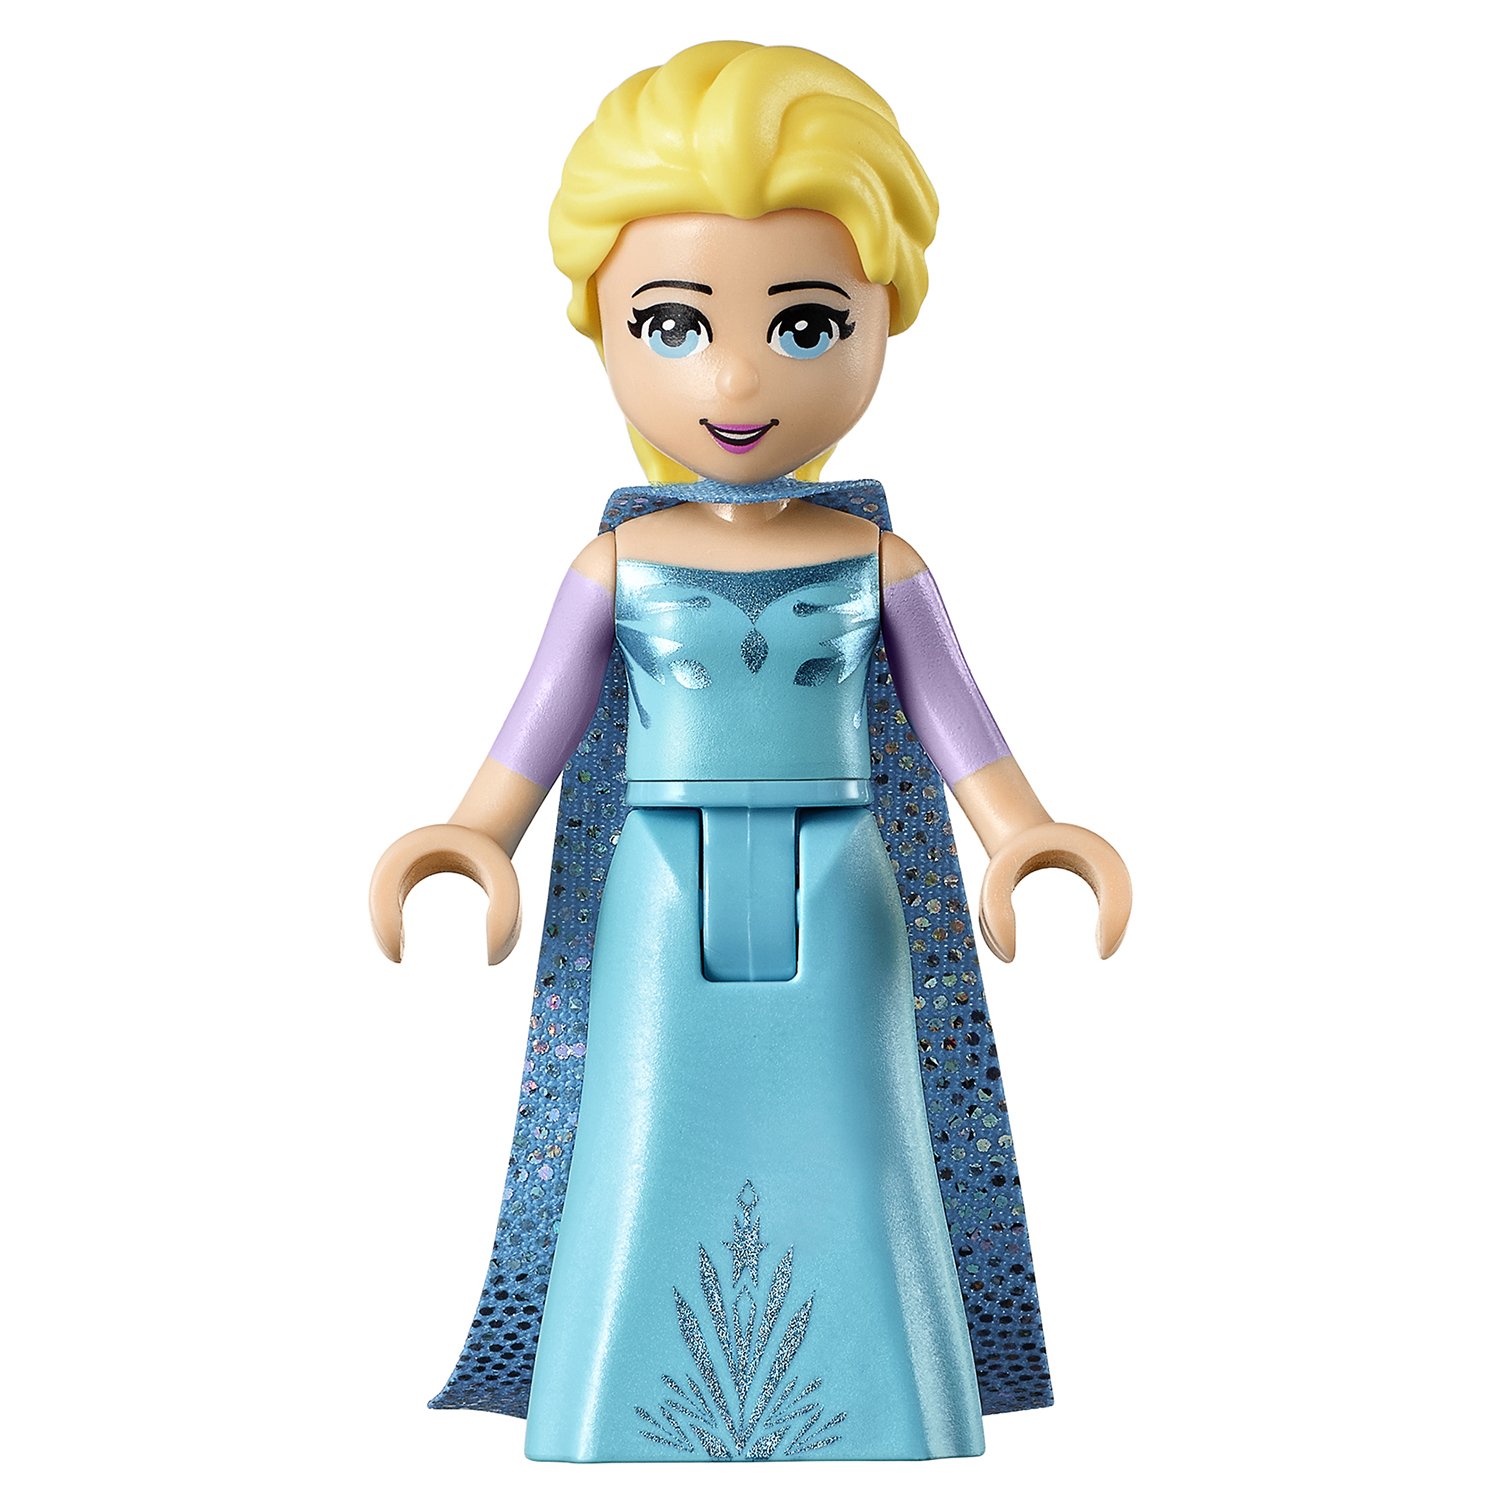 Конструктор Queen «Волшебный ледяной замок Эльзы» 85002 (Disney Princess 41148) / 731 деталь